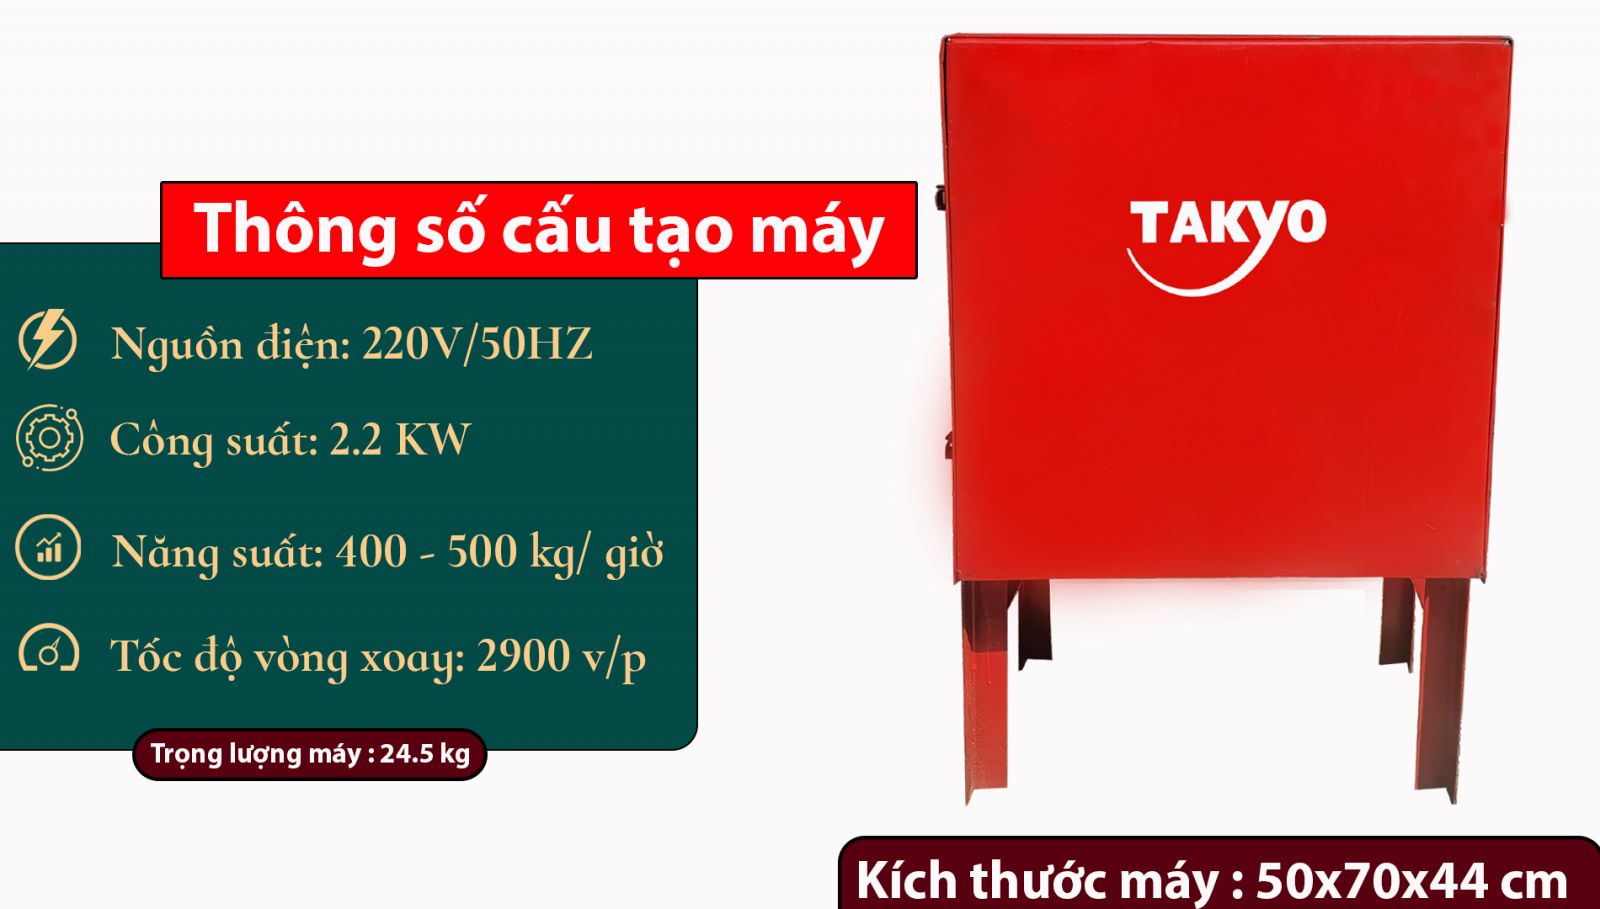 Thông số kỹ thuật cuarv máy thái chuối Takyo TK15